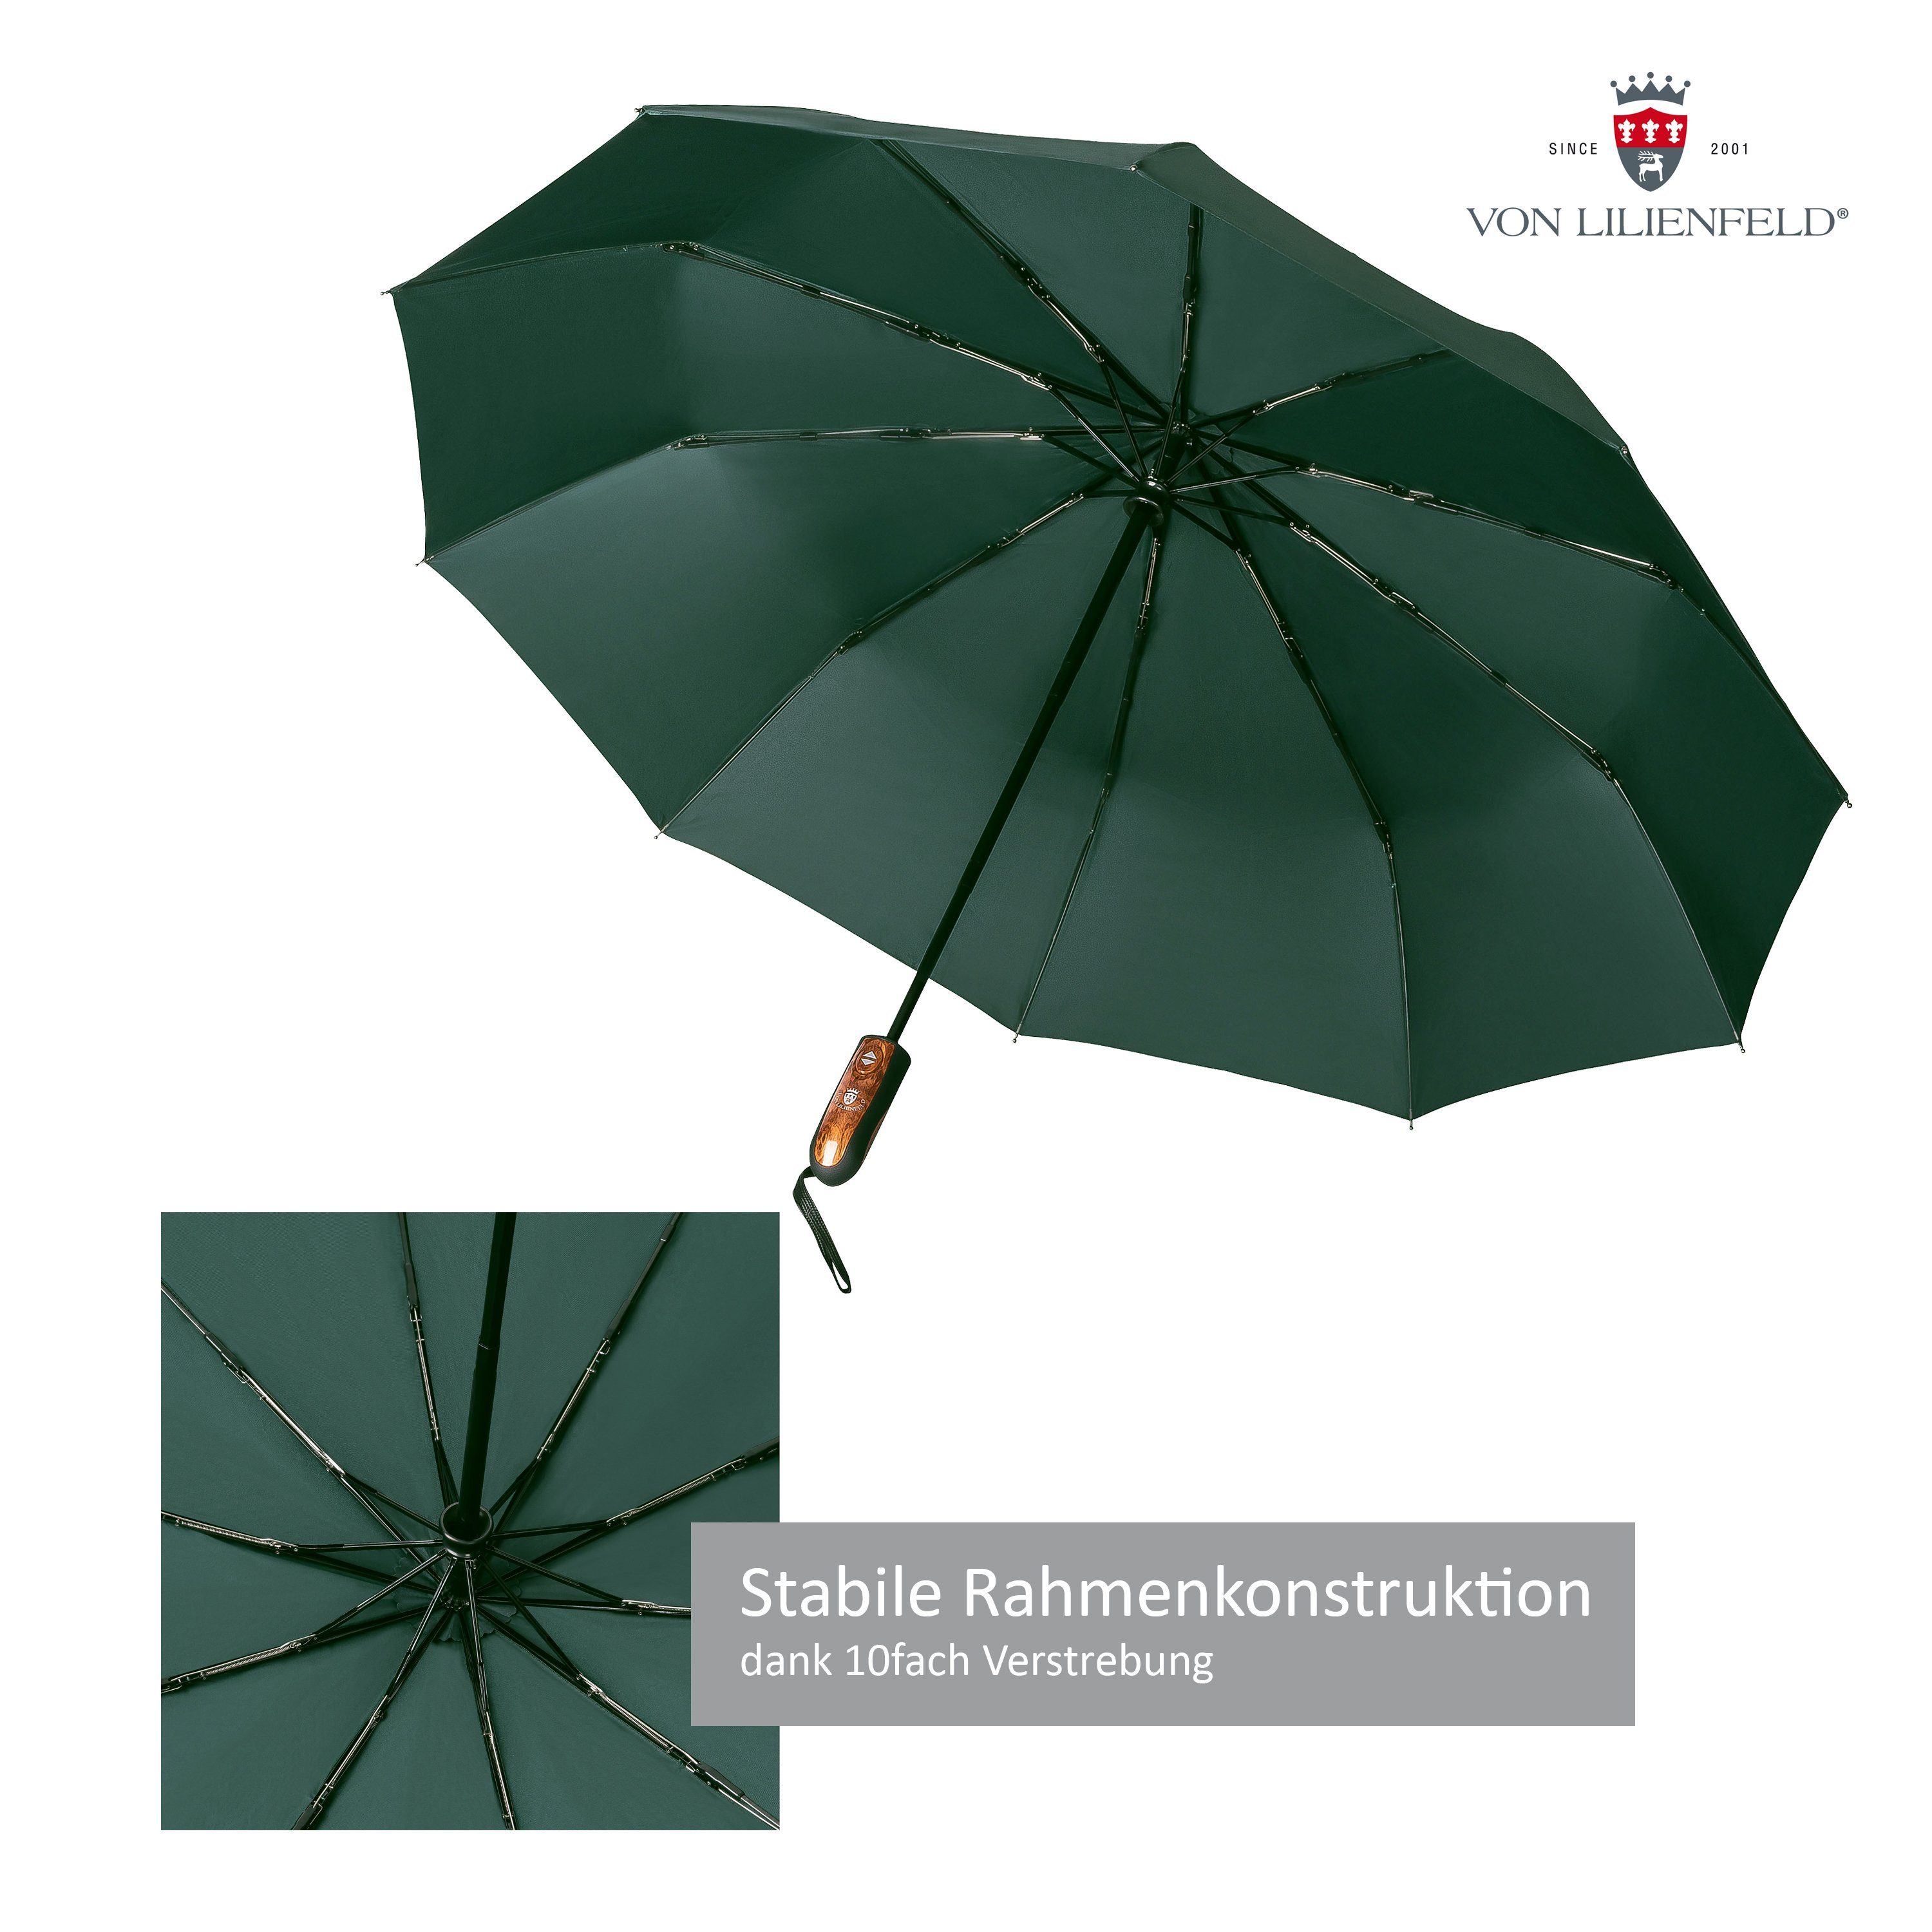 mit Lilienfeld schnelltrocknend Auf-Zu-Automatik Taschenregenschirm Schirm von Clark wasserabweisend, Teflonbeschichtung, extrem Reise-Etu dunkelgrün